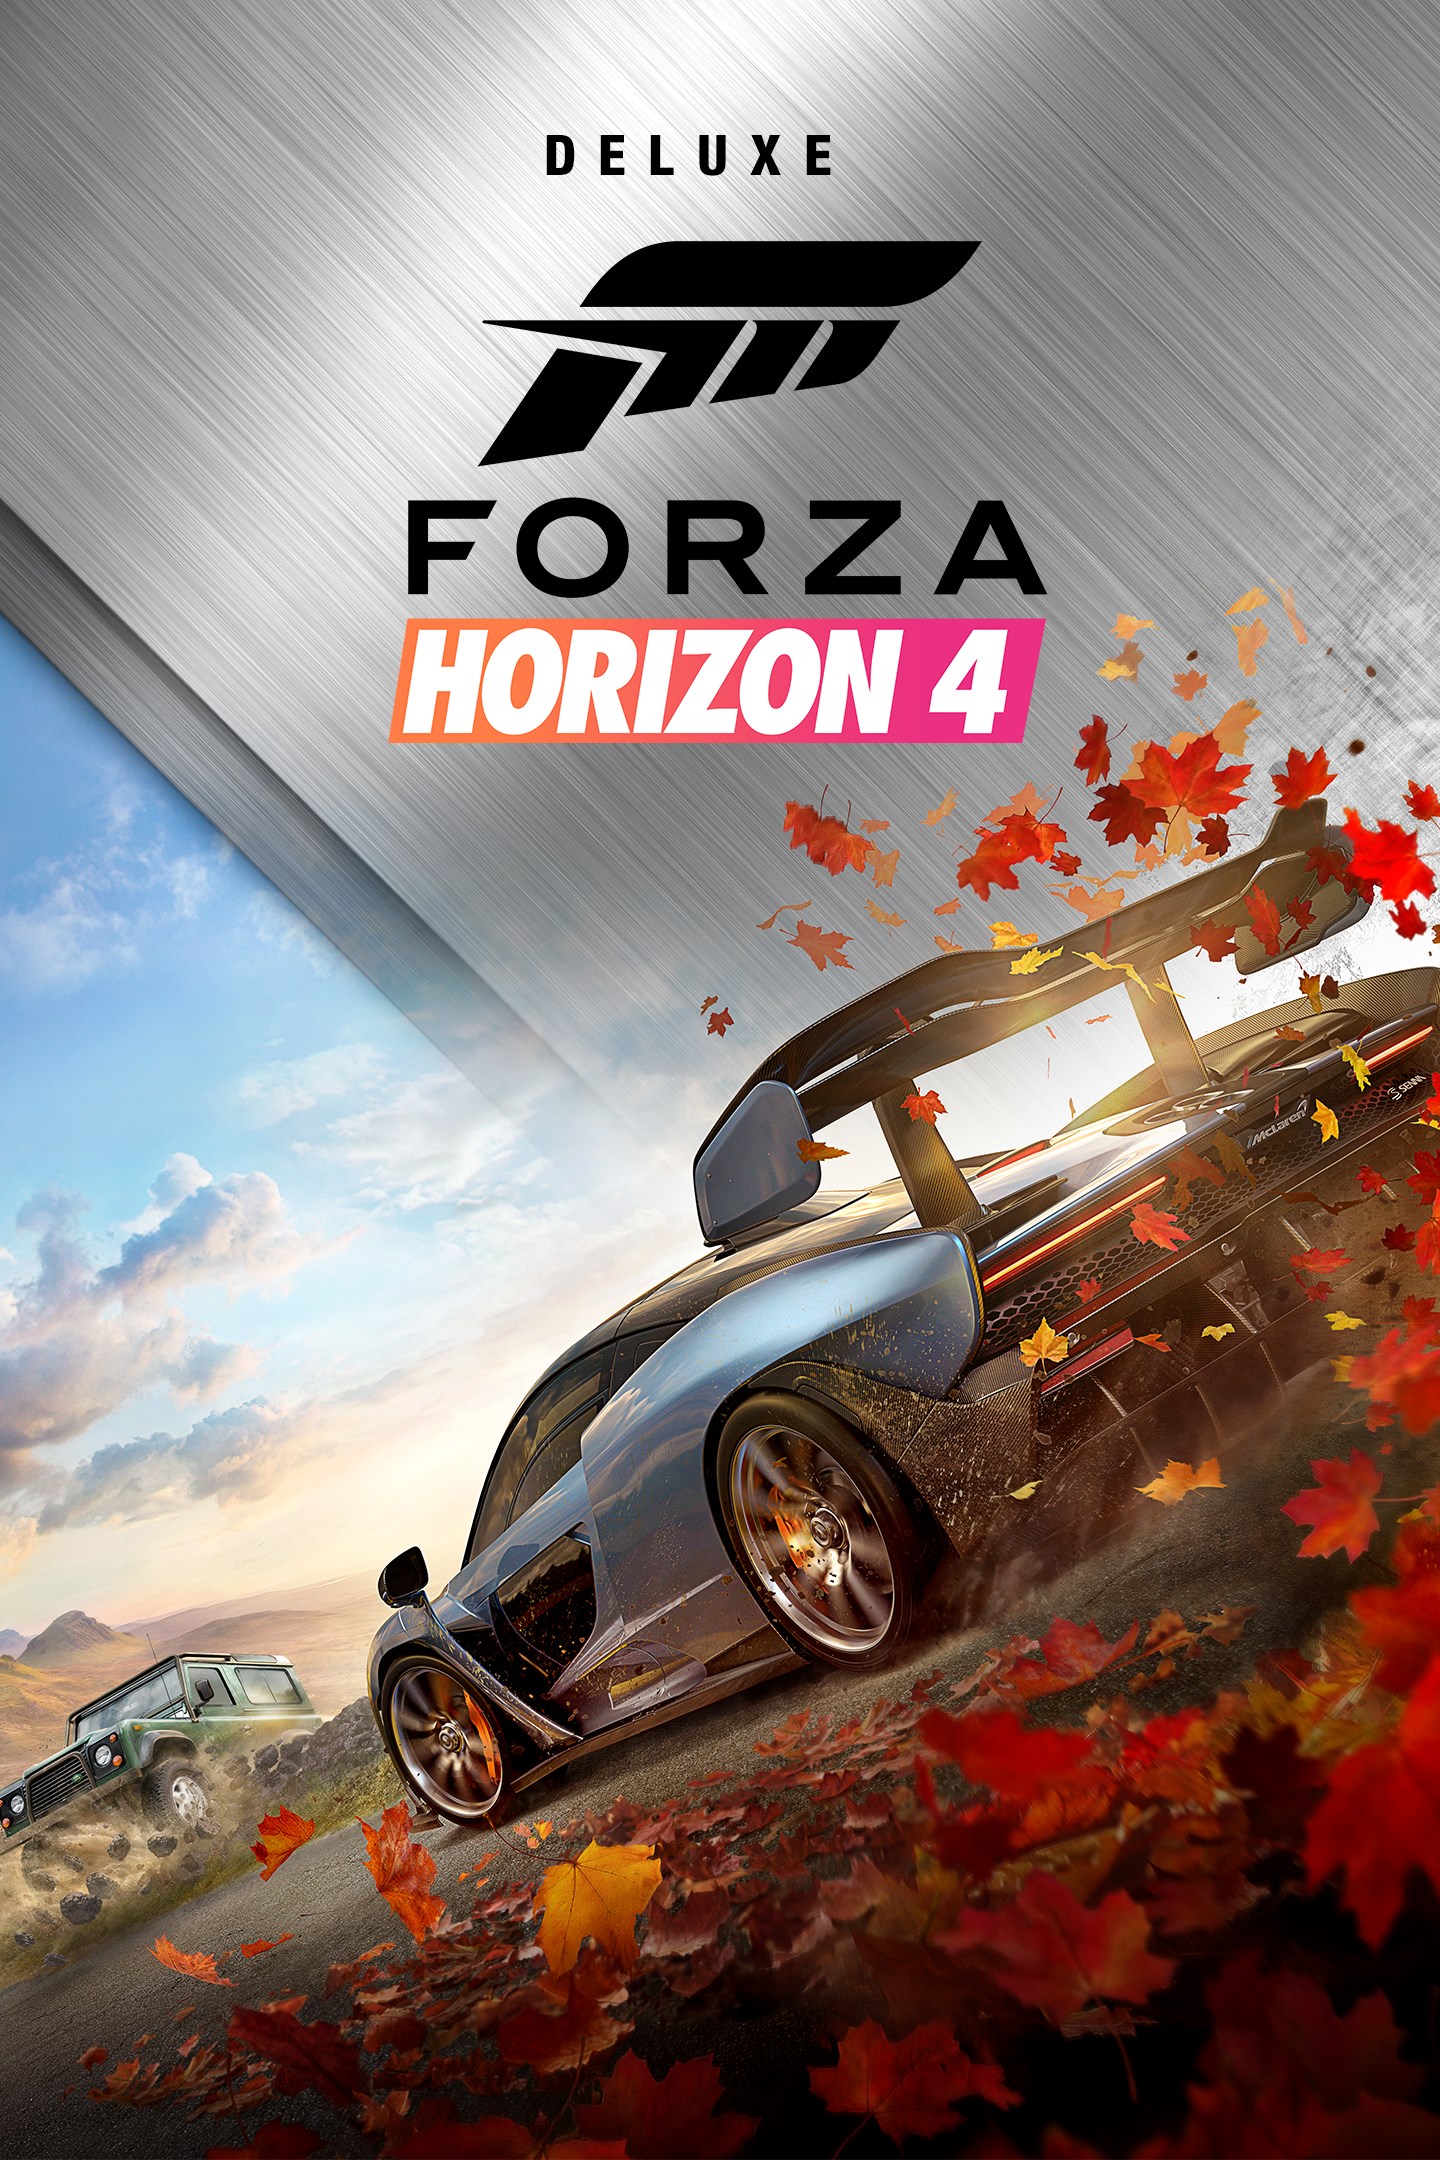 Por ahí aceptable Fascinante Forza Horizon 4/Deluxe Edition | Forza Wiki | Fandom